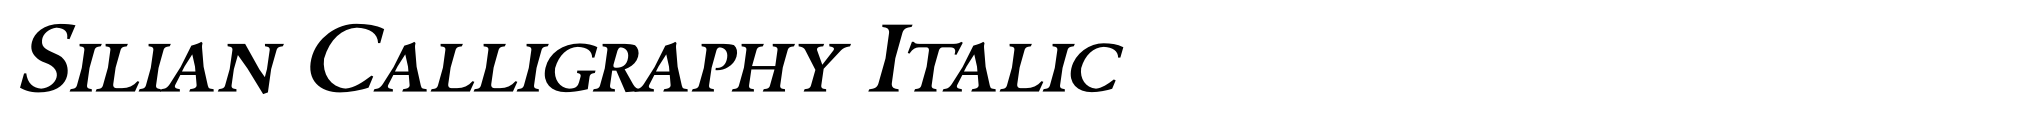 Silian Calligraphy Italic image